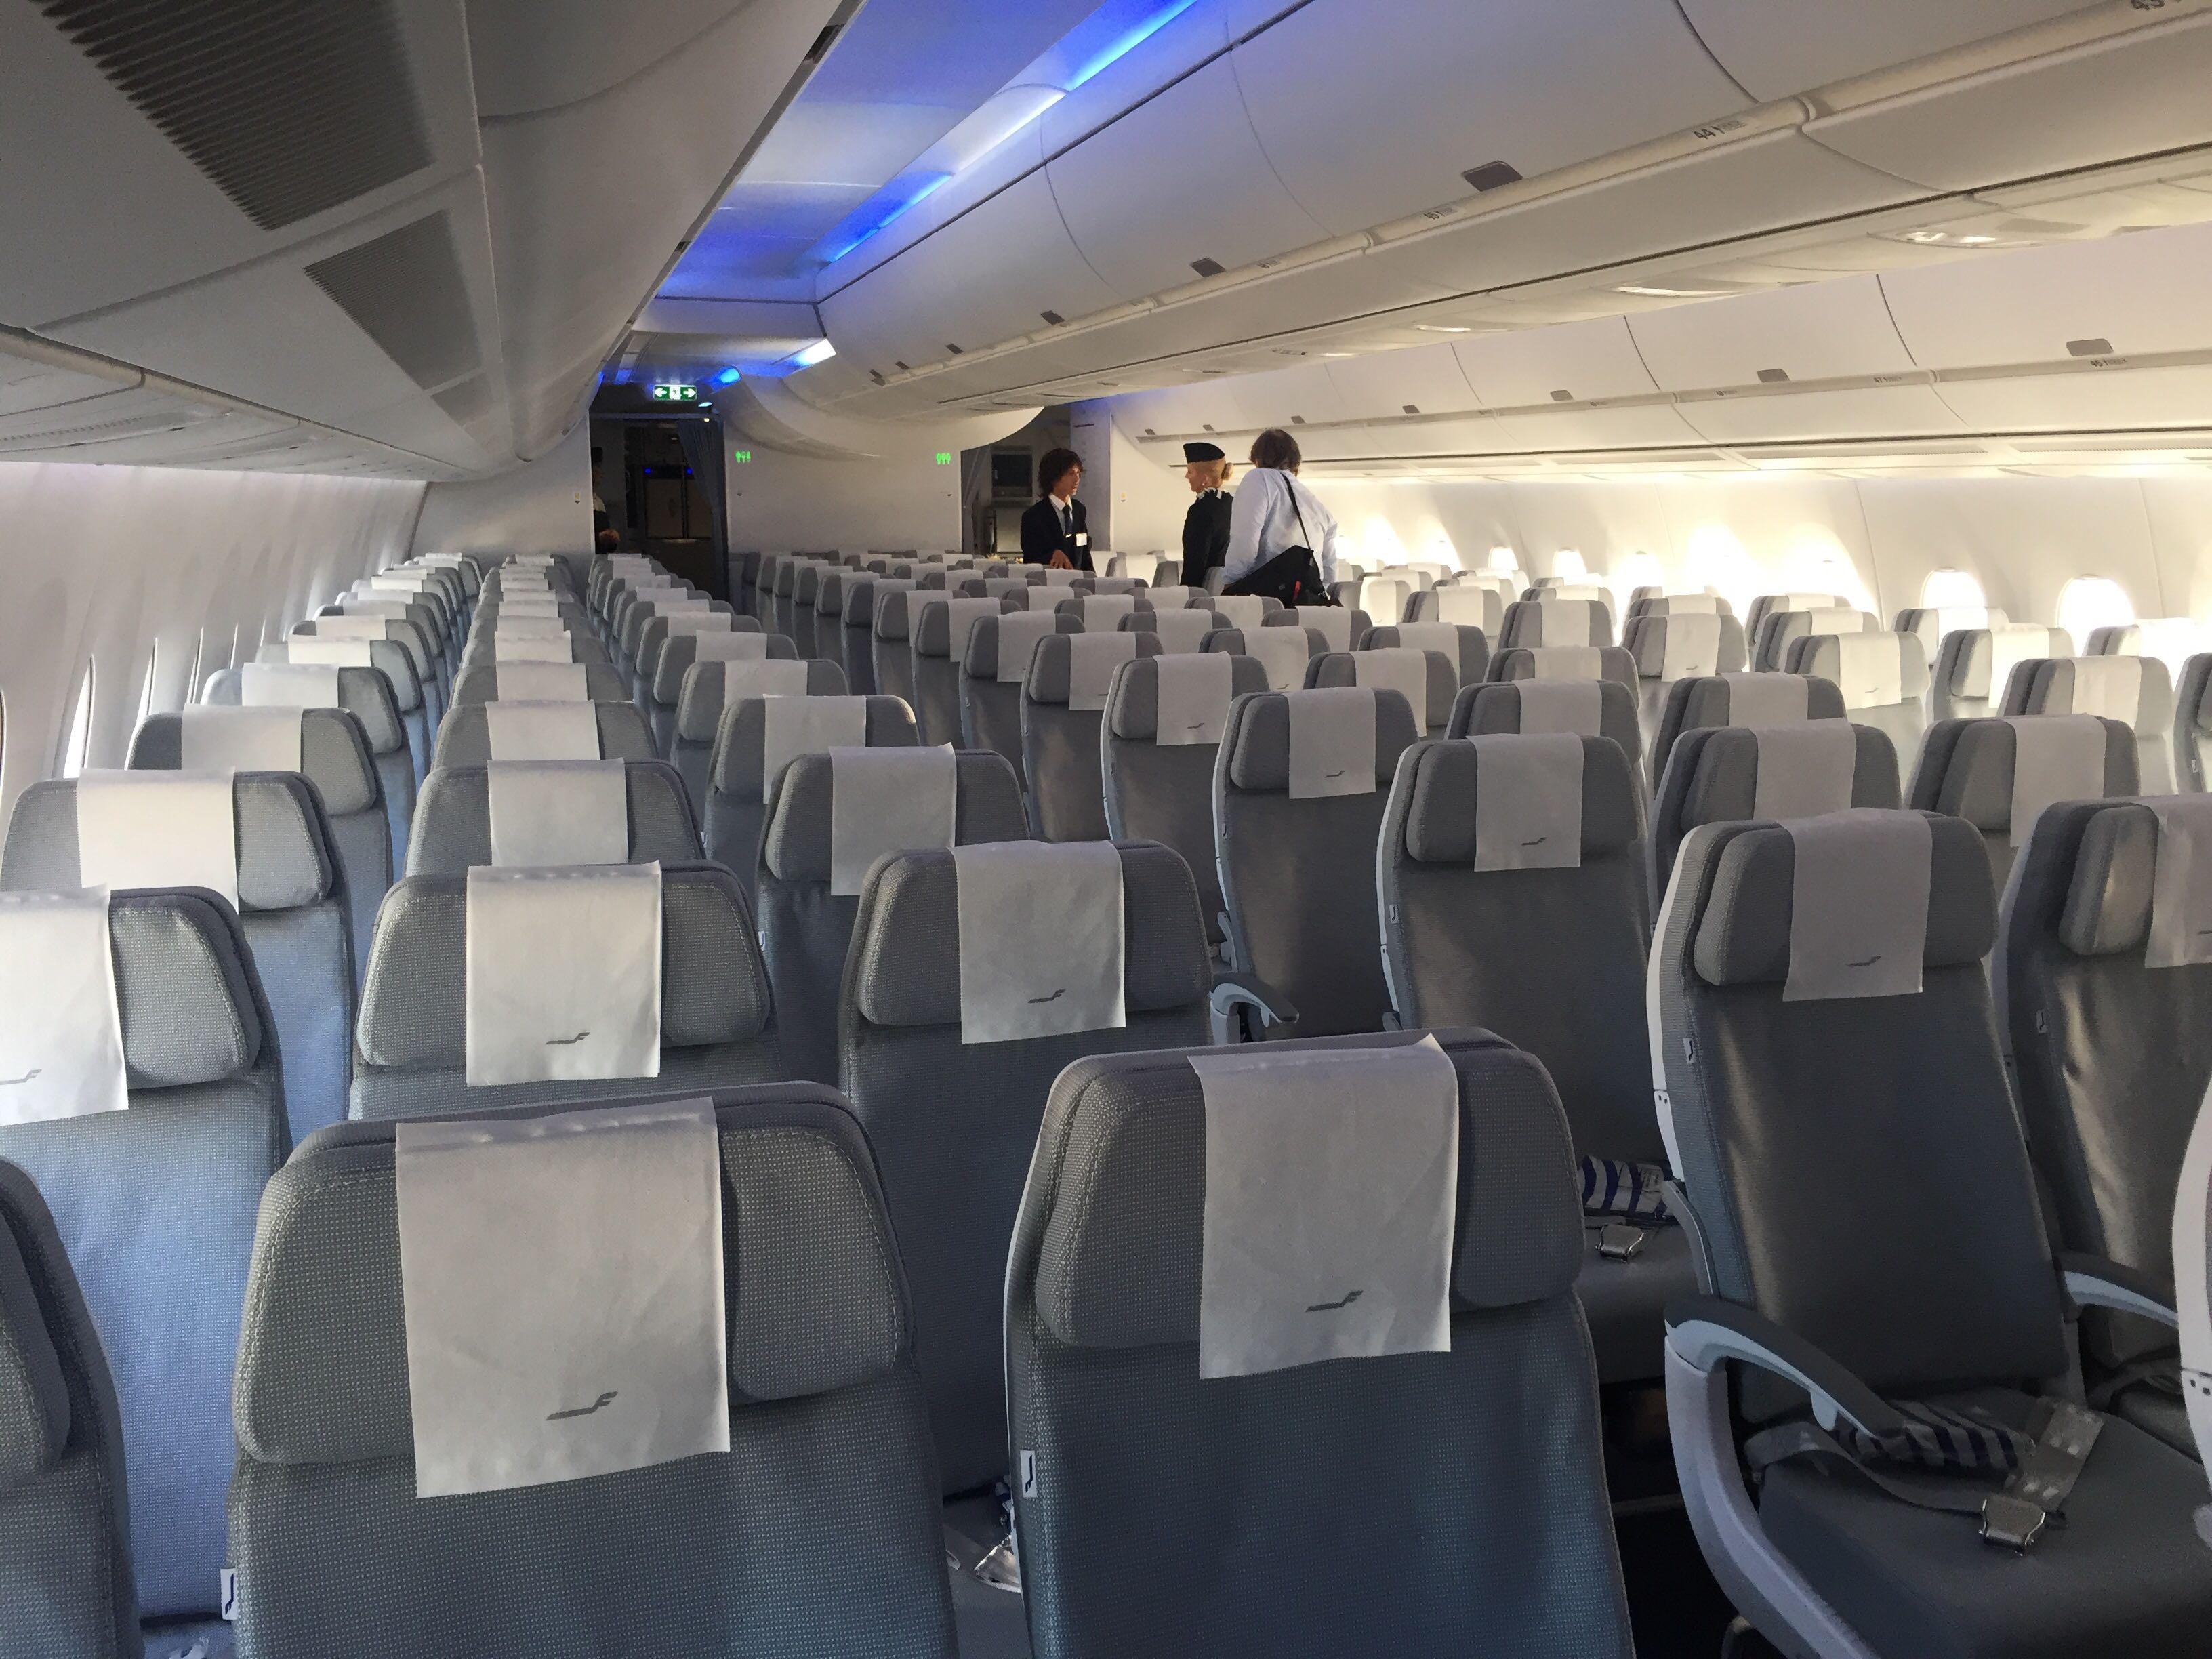 12月22日川航A350将首飞成都至奥克兰国际航线_民航资源网